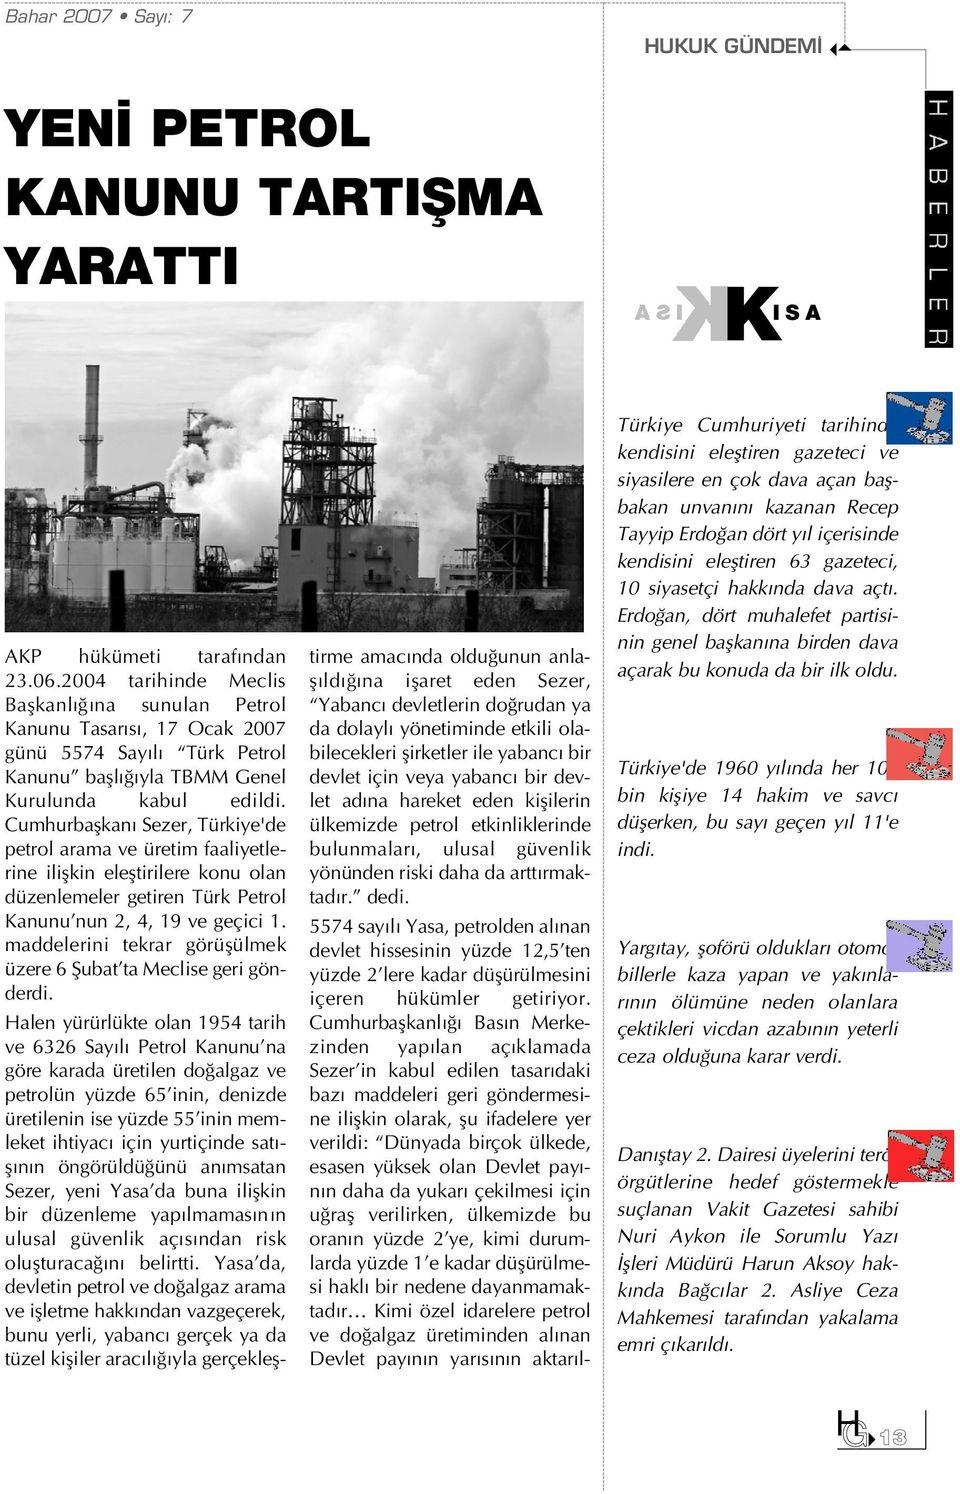 Cumhurbaflkan Sezer, Türkiye'de petrol arama ve üretim faaliyetlerine iliflkin elefltirilere konu olan düzenlemeler getiren Türk Petrol Kanunu nun 2, 4, 19 ve geçici 1.